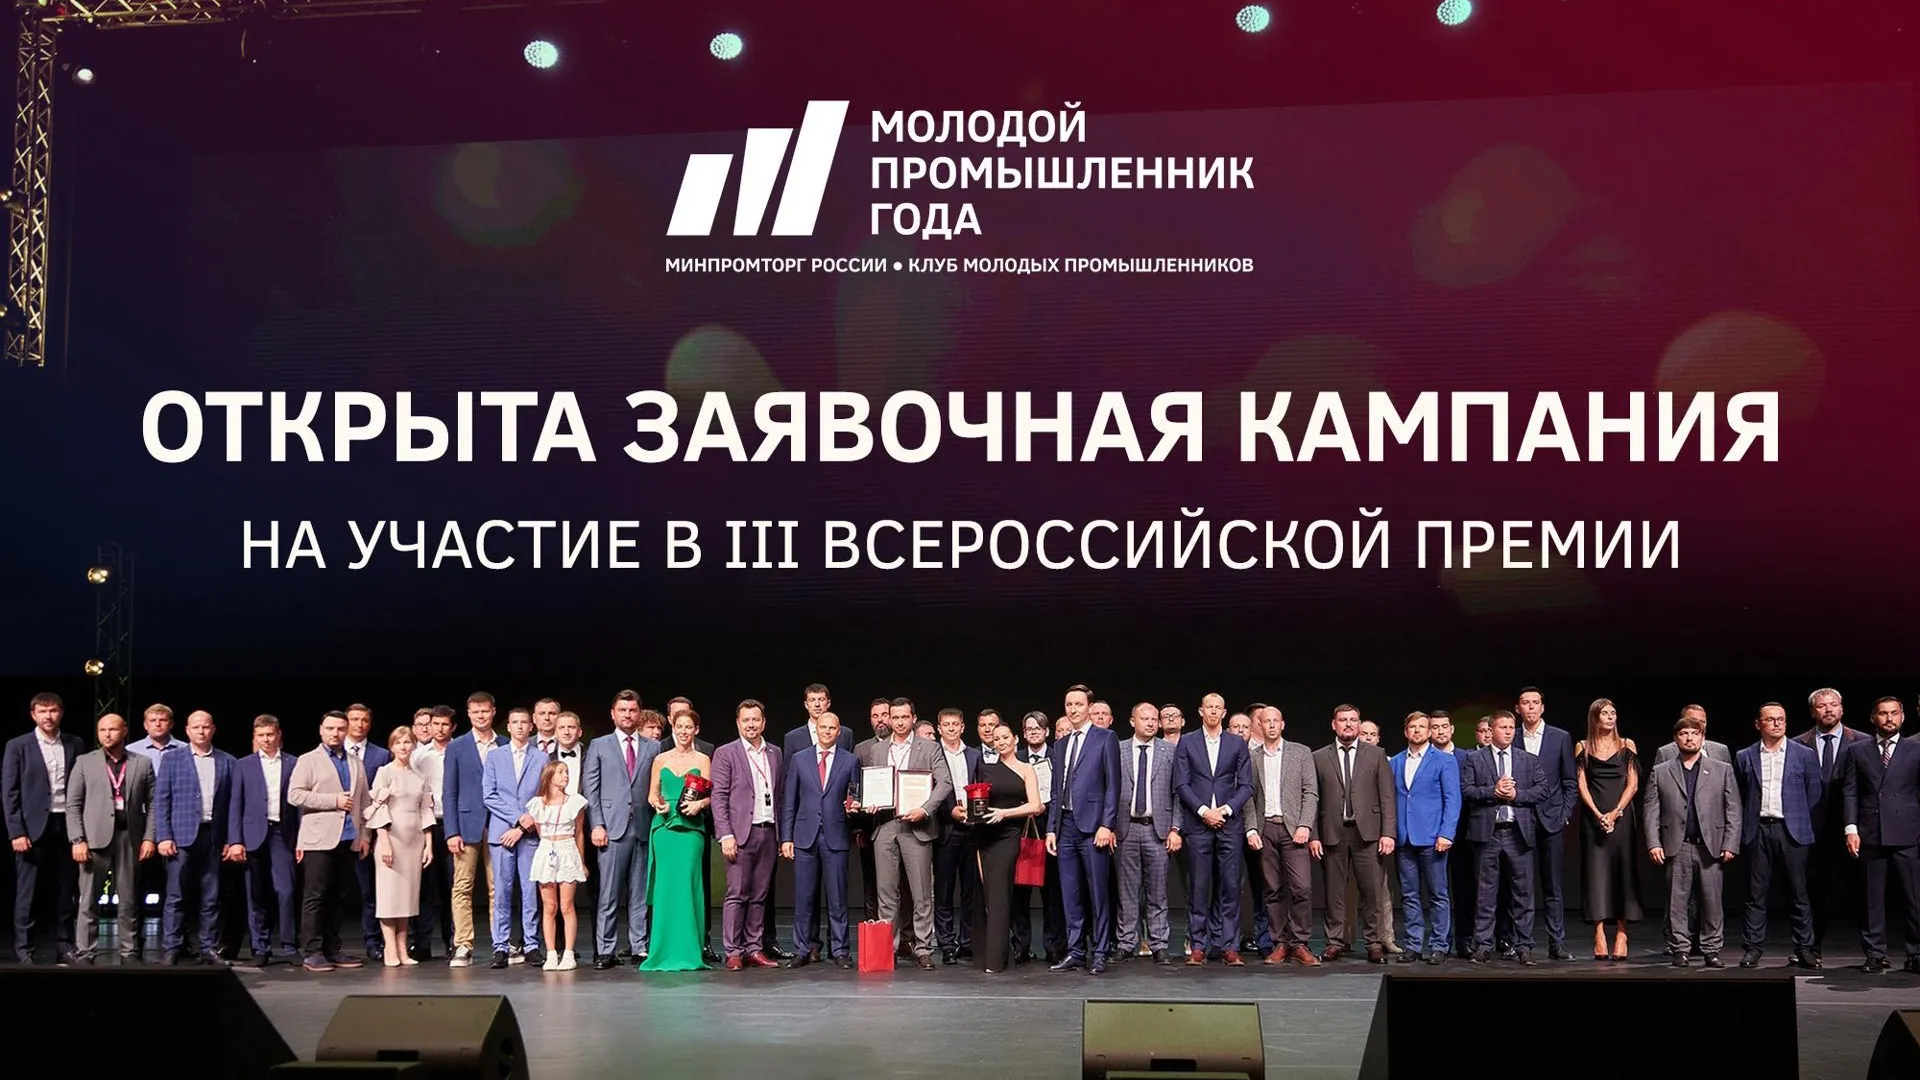 Промышленников из Подмосковья приглашают к участию в премии  «Молодой промышленник года»